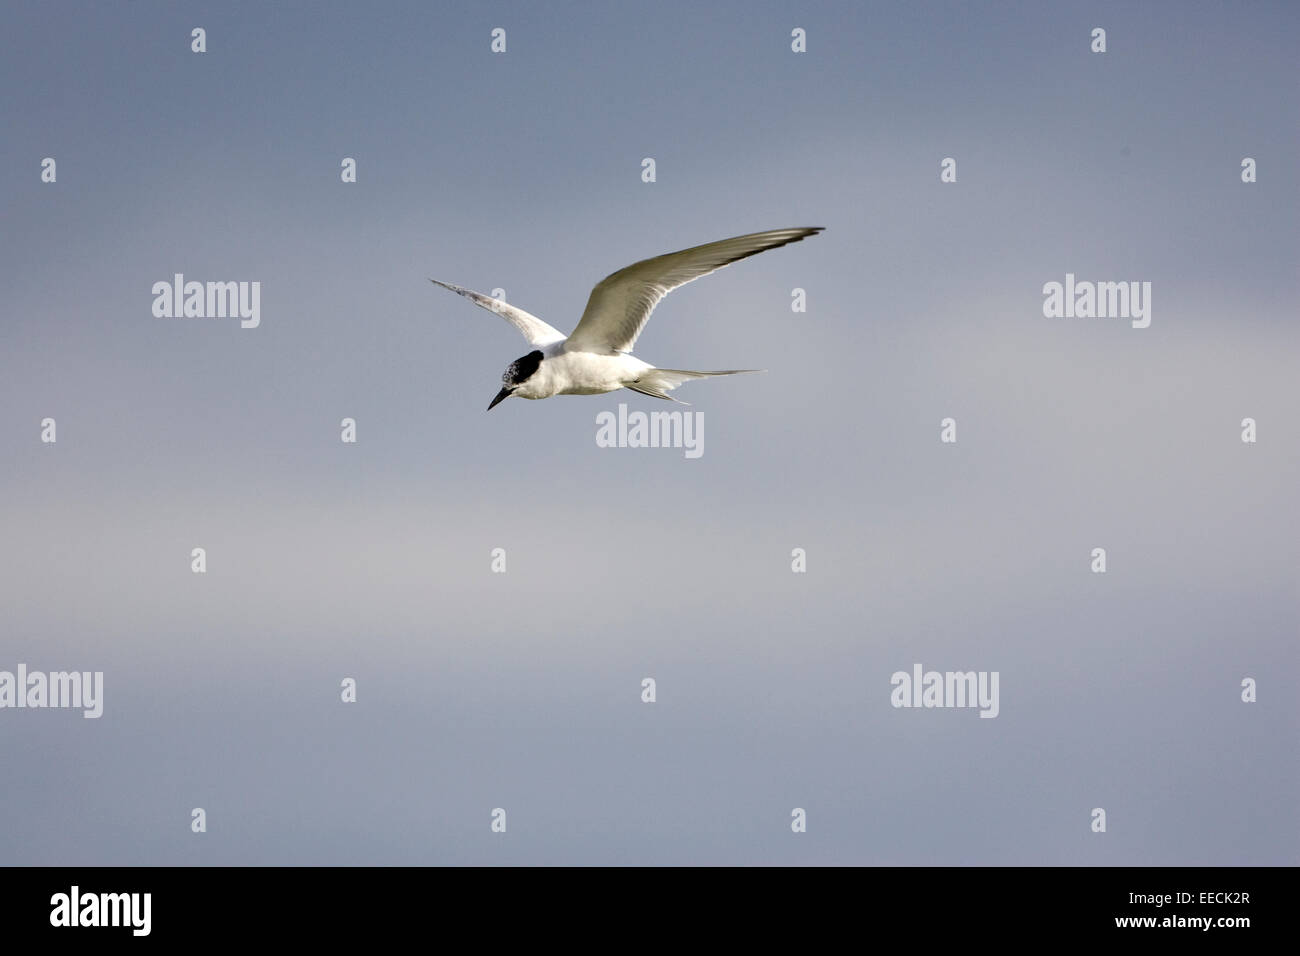 Sandwich tern in flight Stock Photo